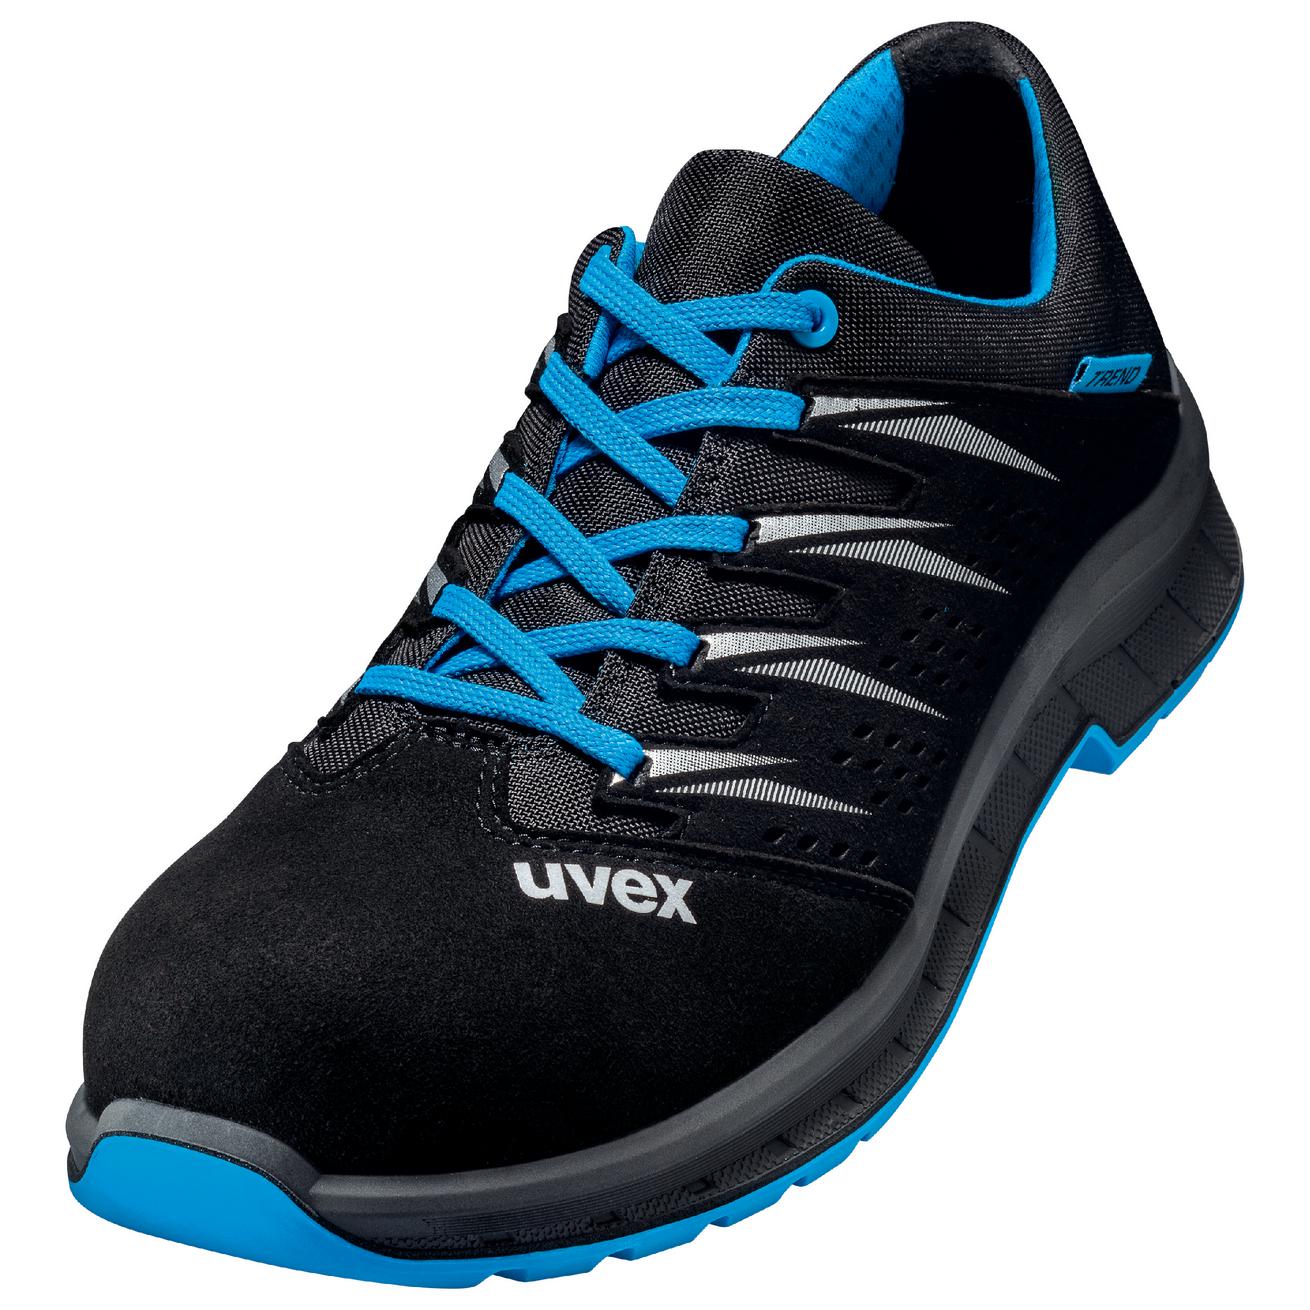 Perf. polobotka obuv uvex 2 trend, šíře 11, S1 SRC, černá/modrá 6937 Velikost: 36, Kód produktu: 6937836